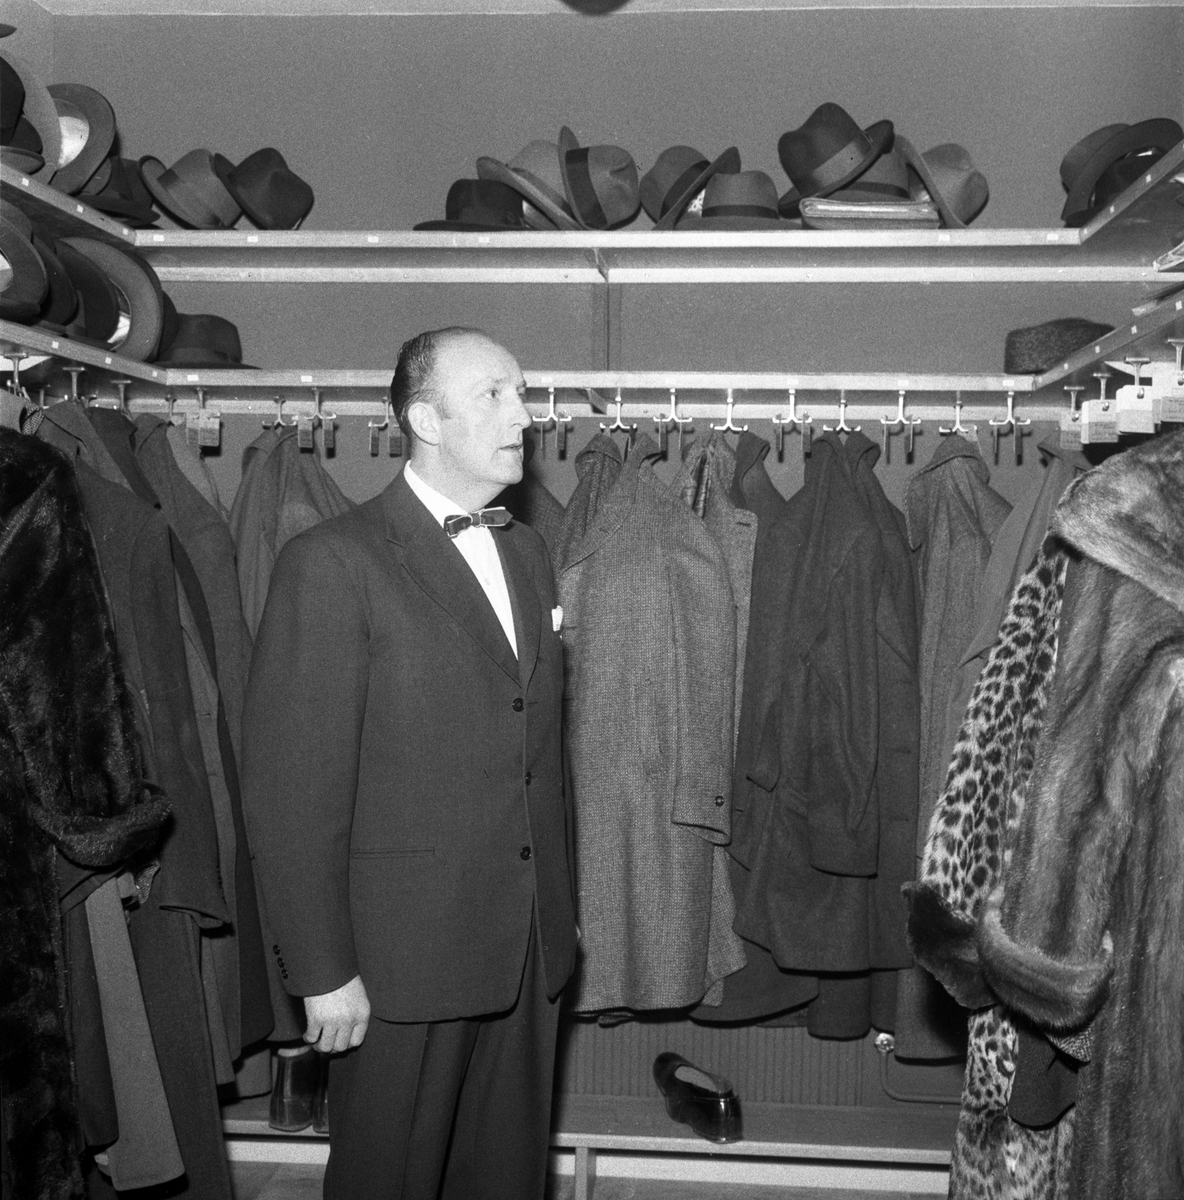 Den 10 mars 1960 invigdes Rally hotell i Linköping. Stor baluns får vi förmoda med landhövding Eckerberg som invigningstalare och ett 100-tal särskilt inbjudna. Det märktes inte minst i garderoben där antalet ytterplagg och inte minst hattar växte med kvällen.